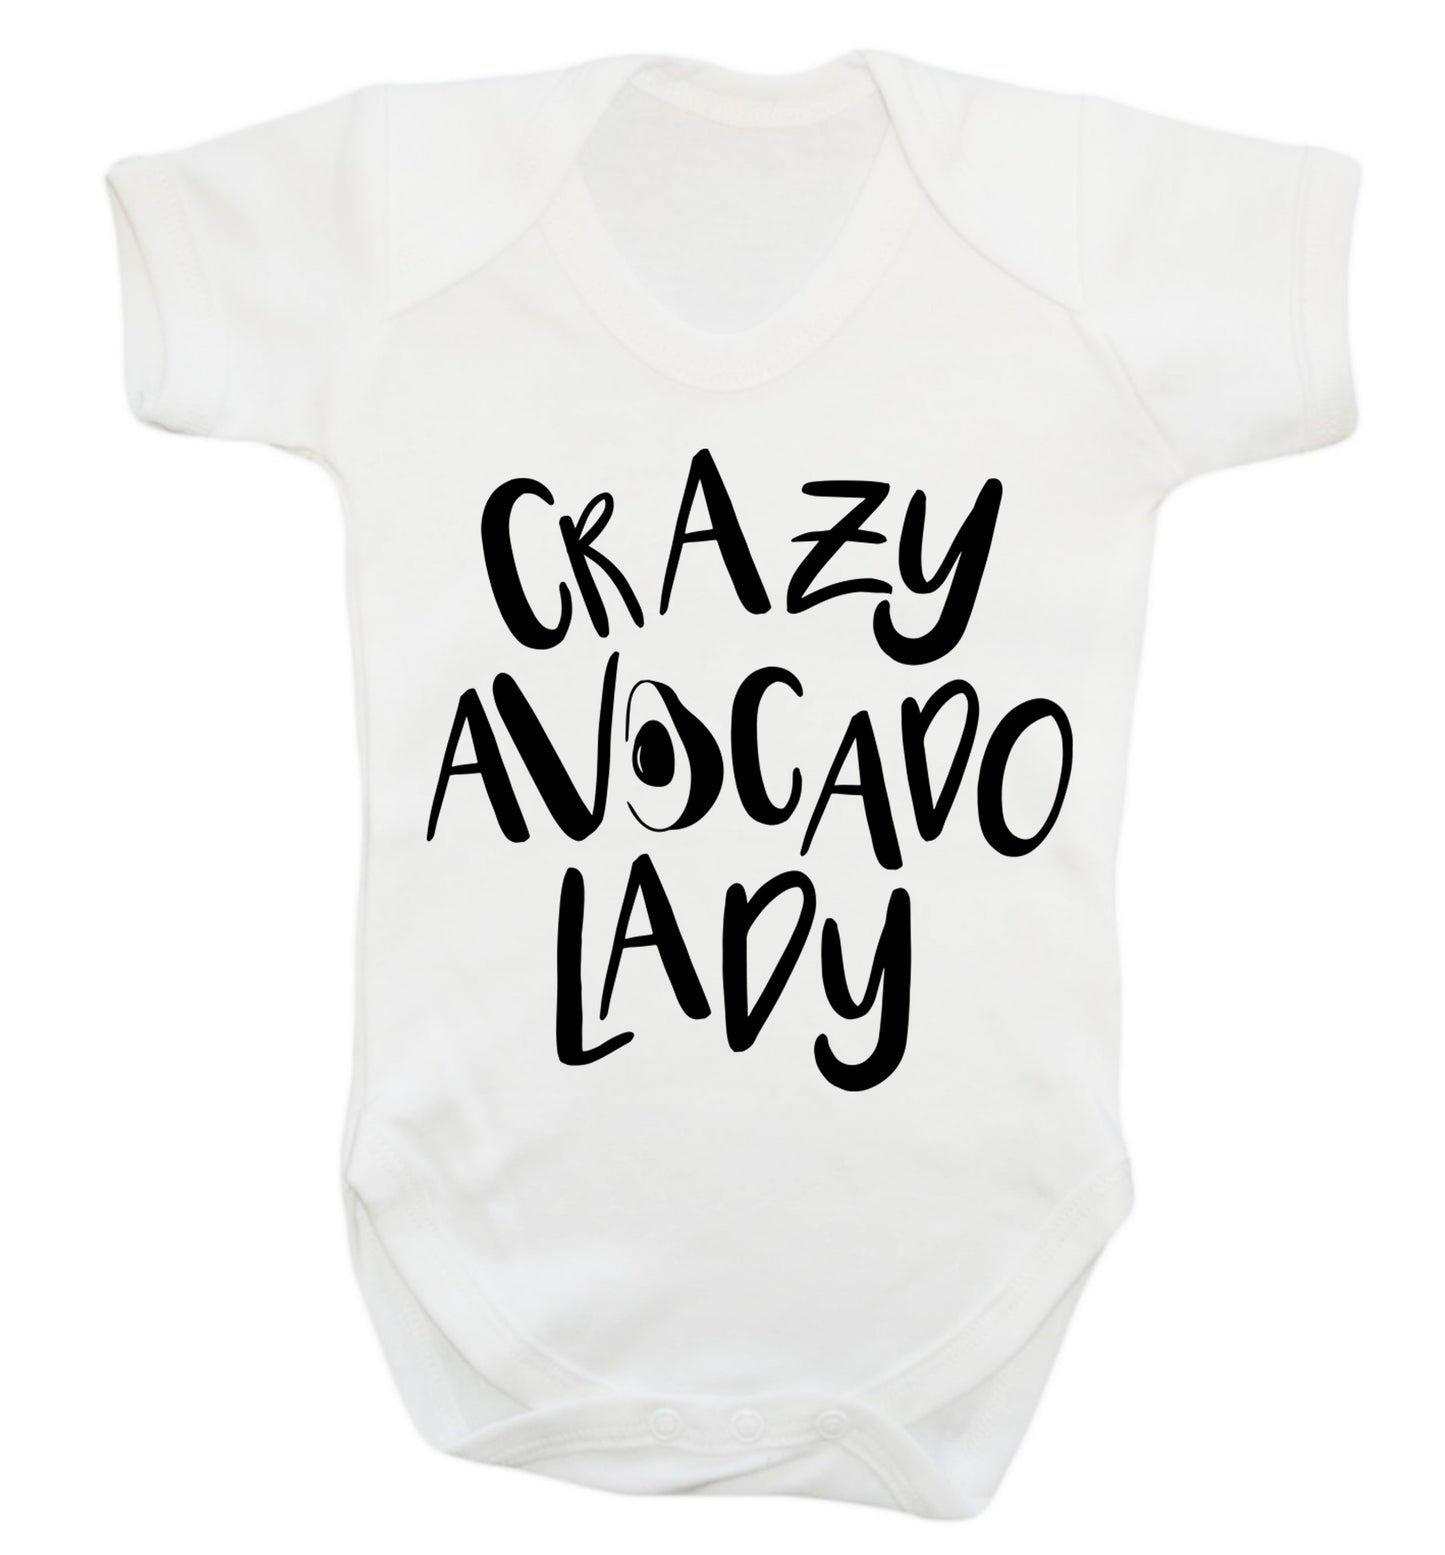 Crazy avocado lady Baby Vest white 18-24 months